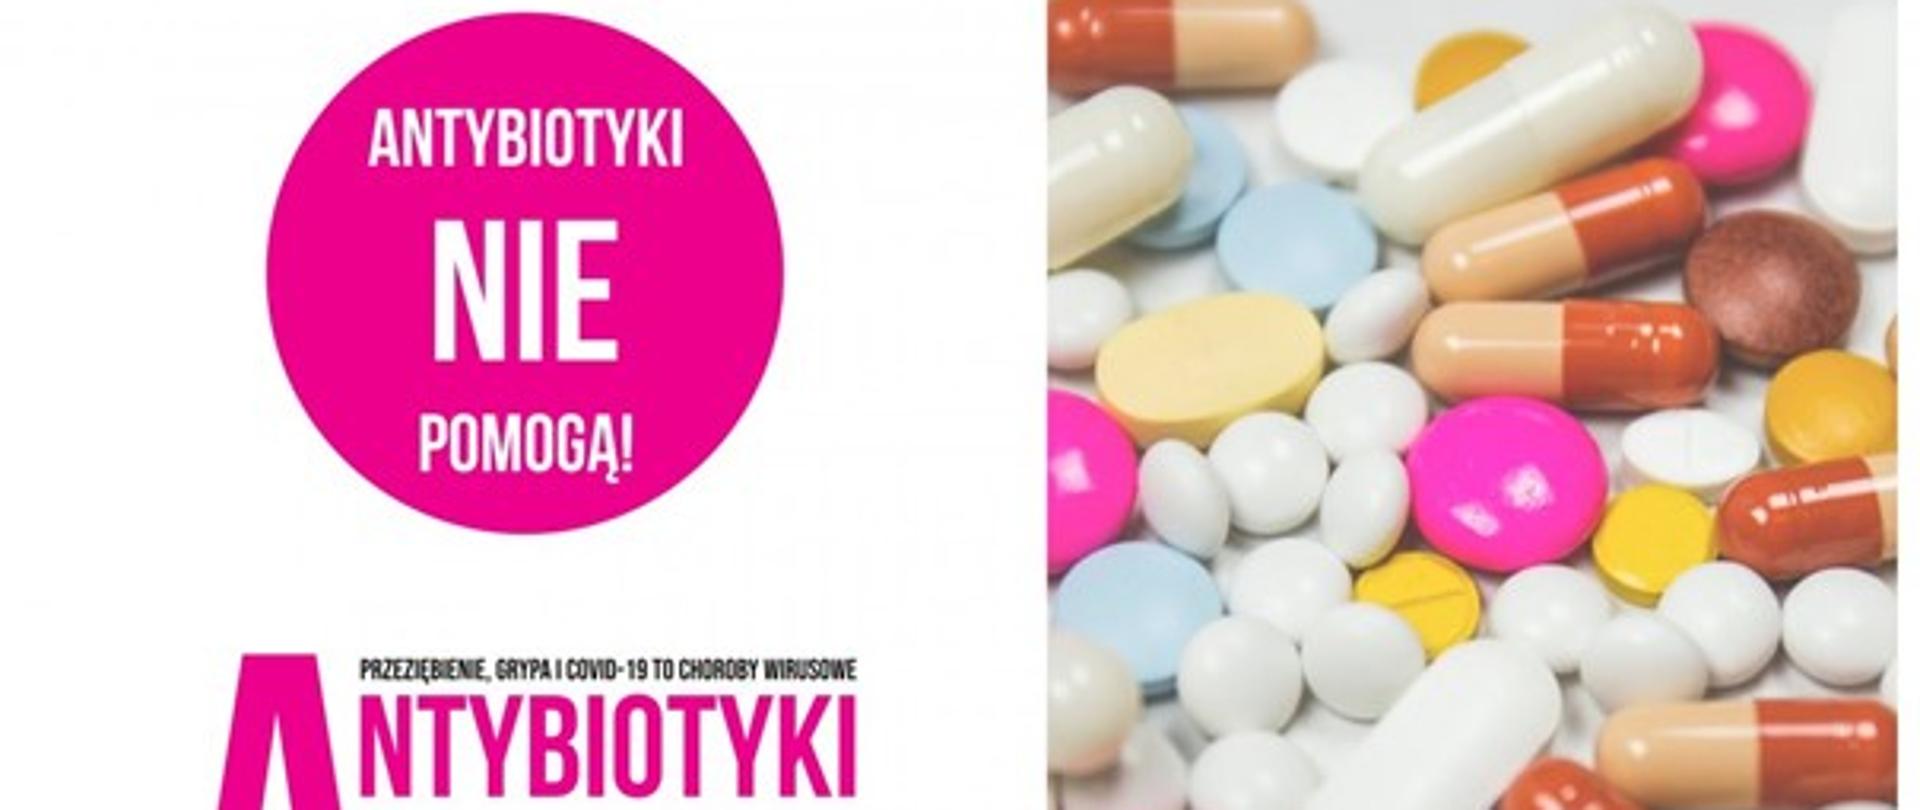 Baner - Antybiotyki nie pomogą, zdjęcie tabletek